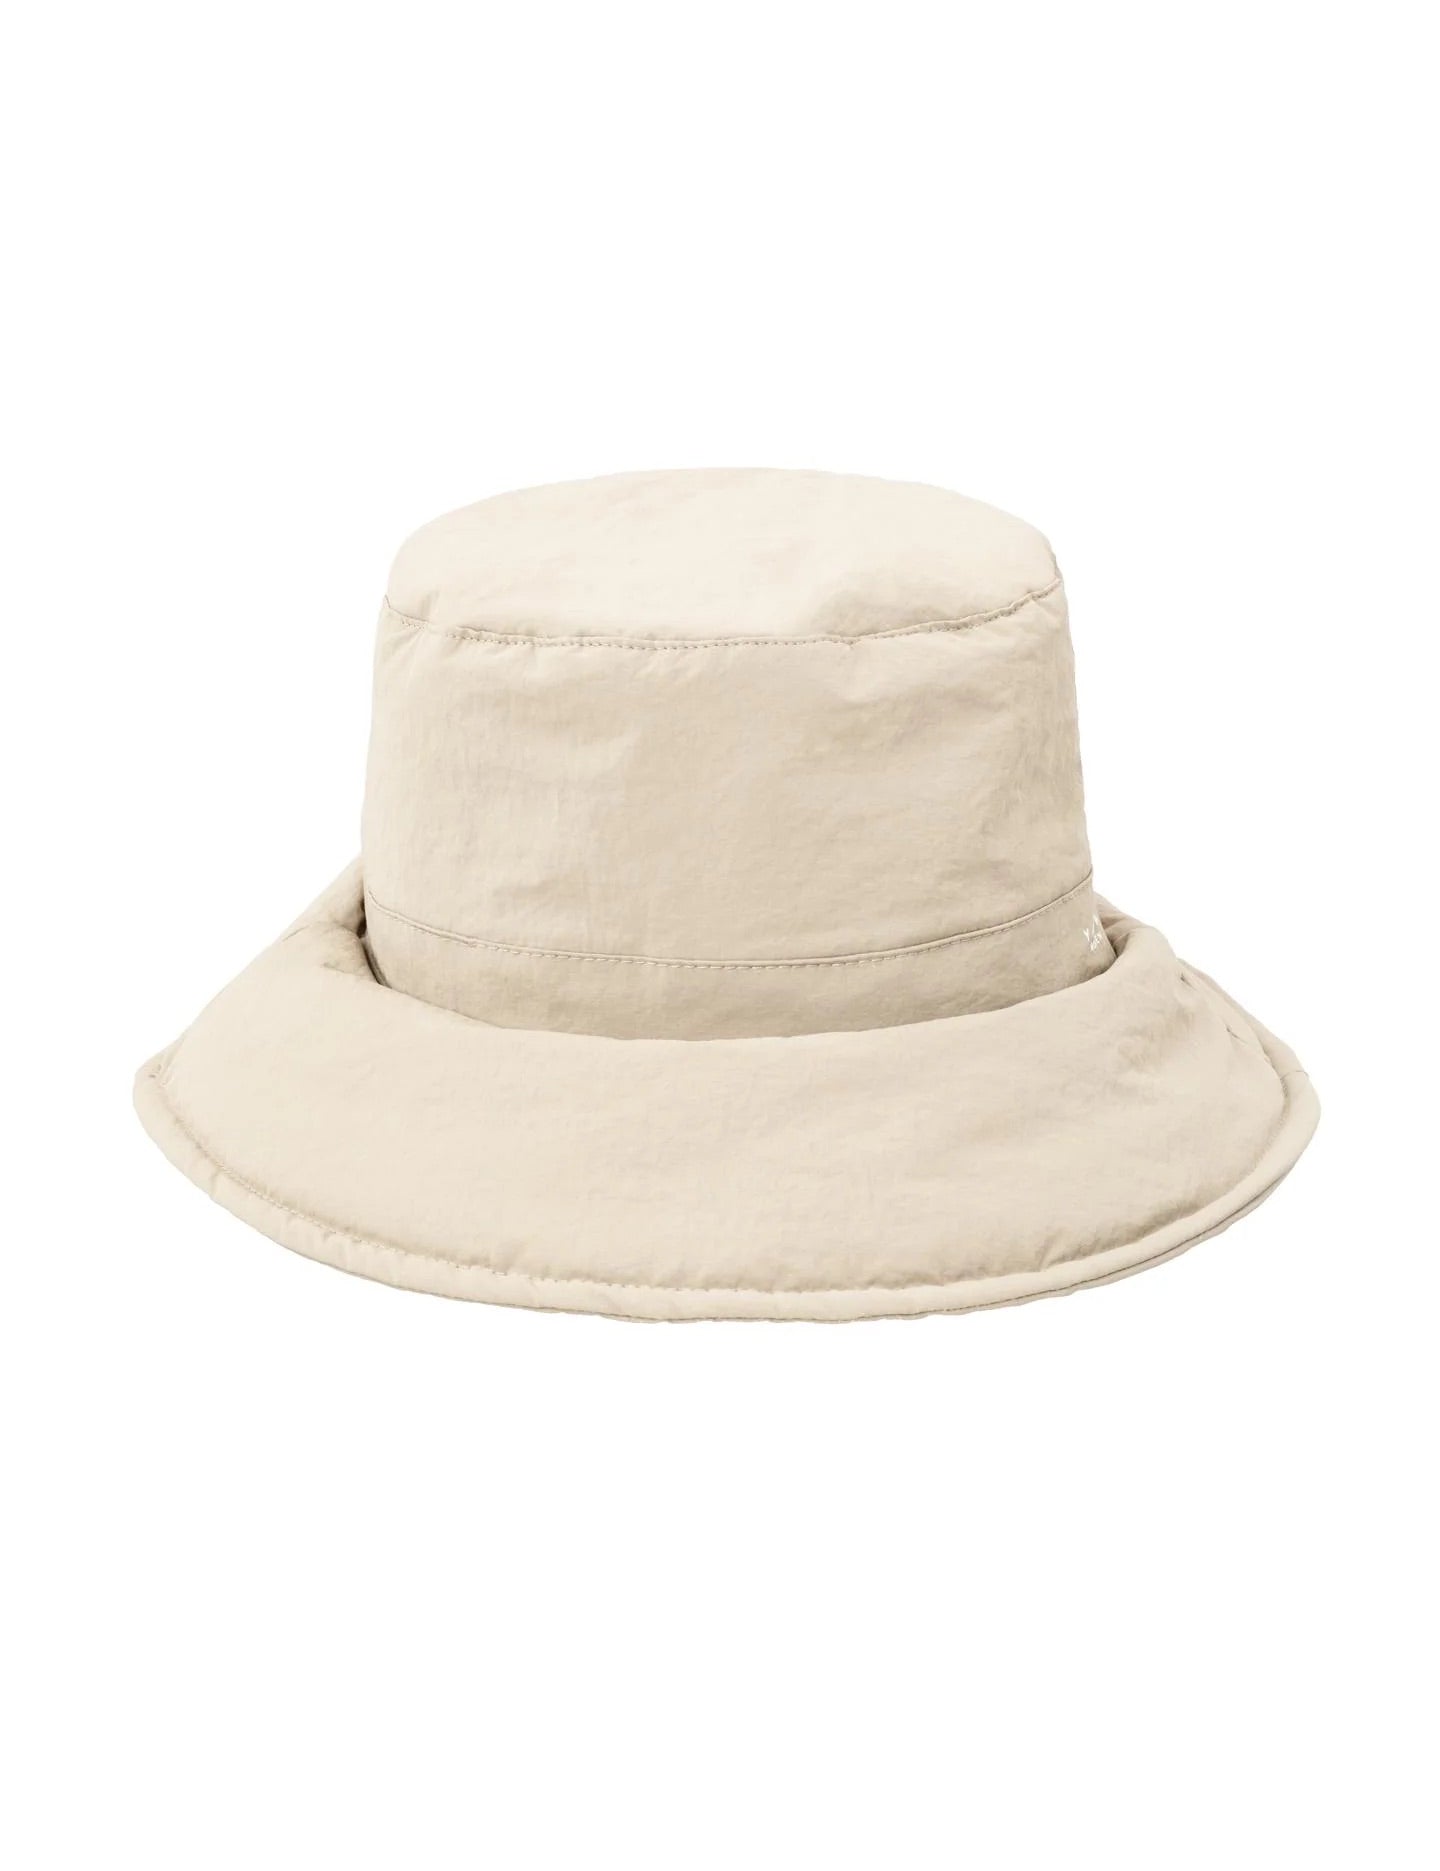 nylon-bucket-hat-reversible-summer-sand_2880x_jpg.jpg